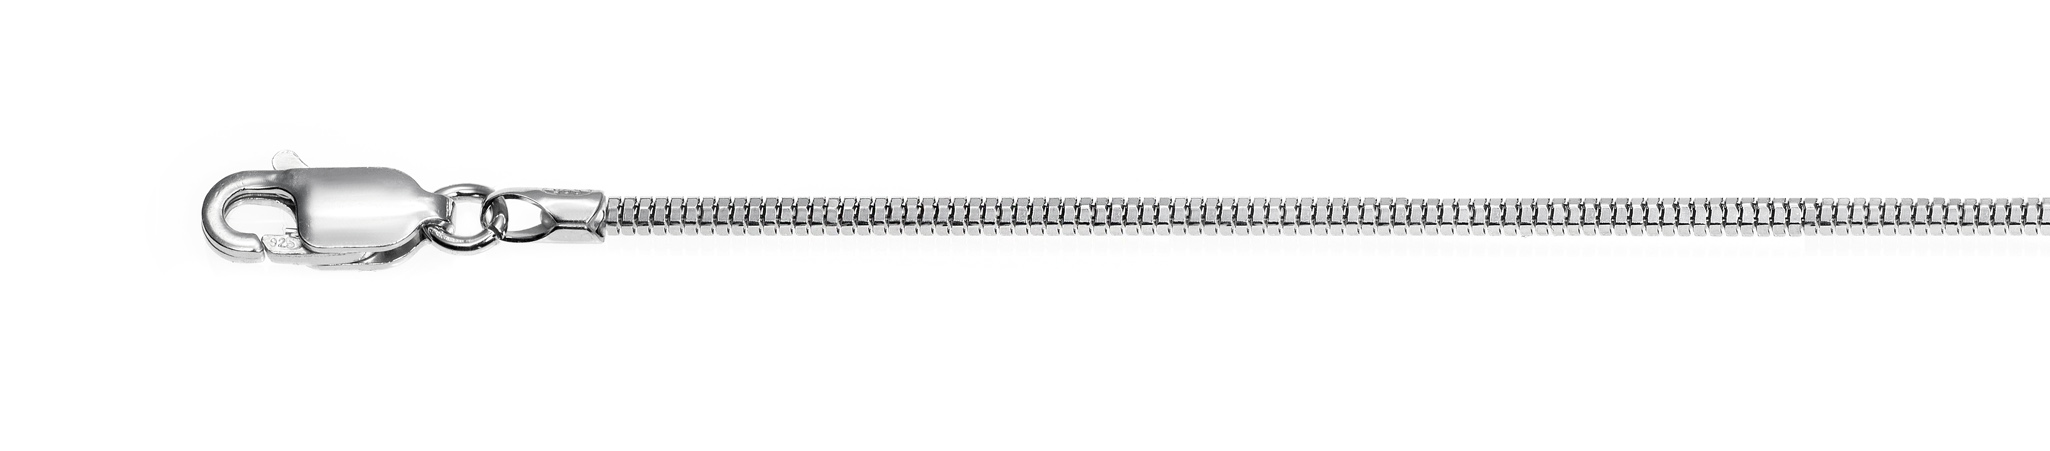 Cadenas de plata rodiadas  - Toro diamantada rodiada - Ancho 1.6 - Ref. 91016.40R